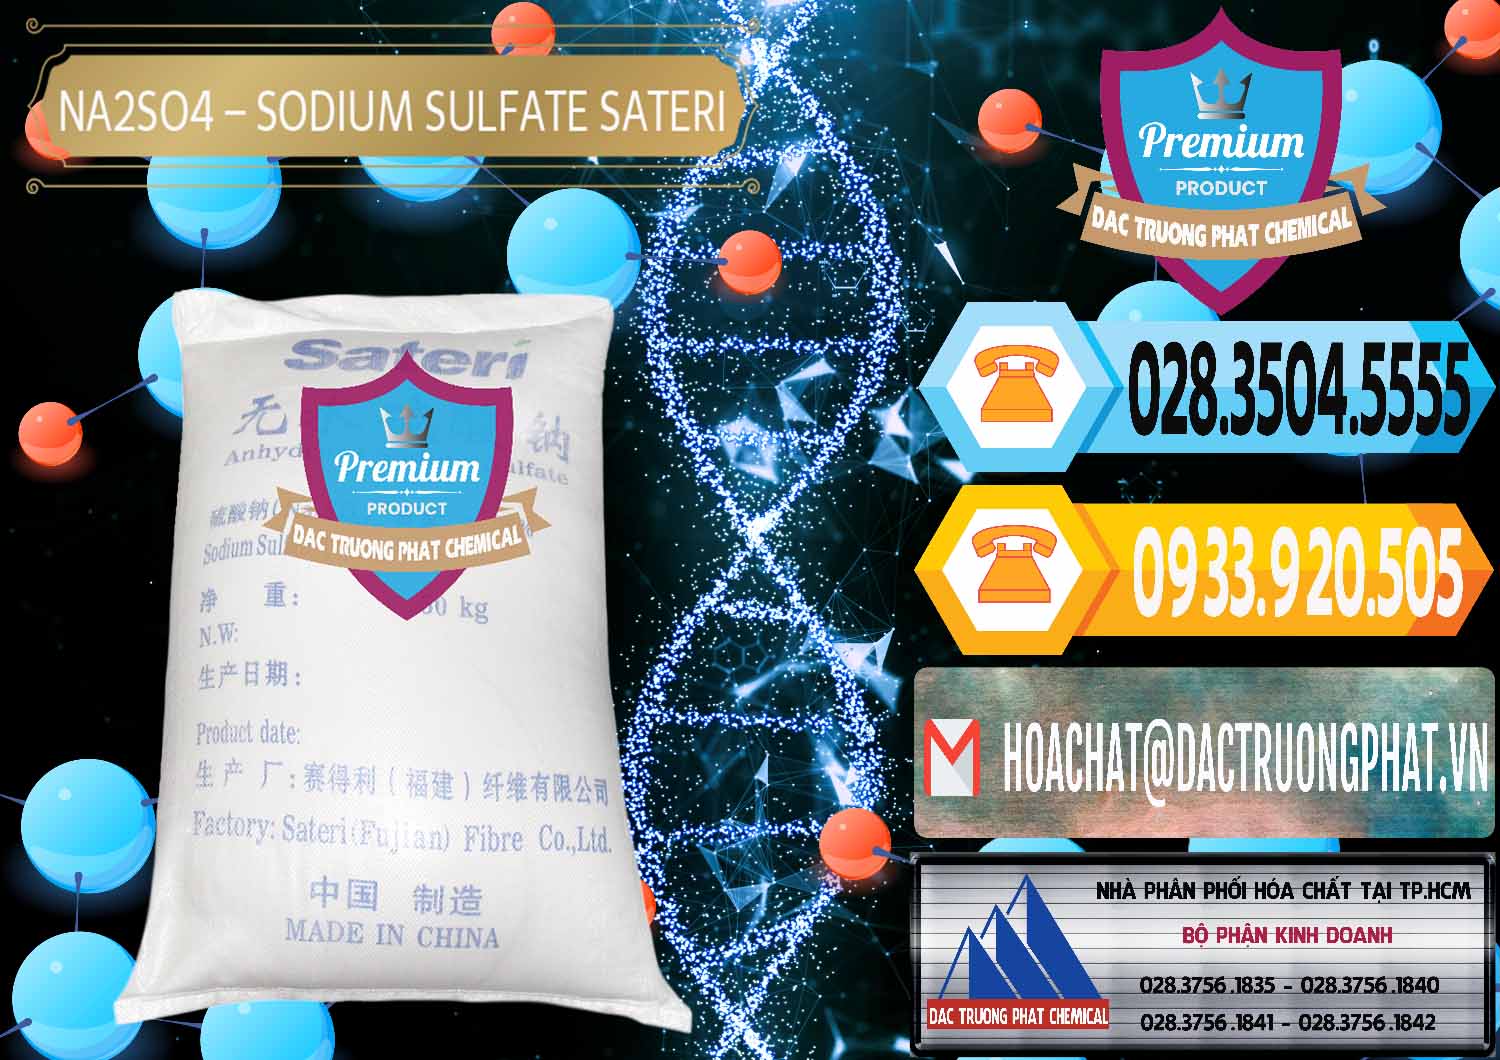 Công ty cung cấp - bán Sodium Sulphate - Muối Sunfat Na2SO4 Sateri Trung Quốc China - 0100 - Nơi phân phối ( kinh doanh ) hóa chất tại TP.HCM - hoachattayrua.net